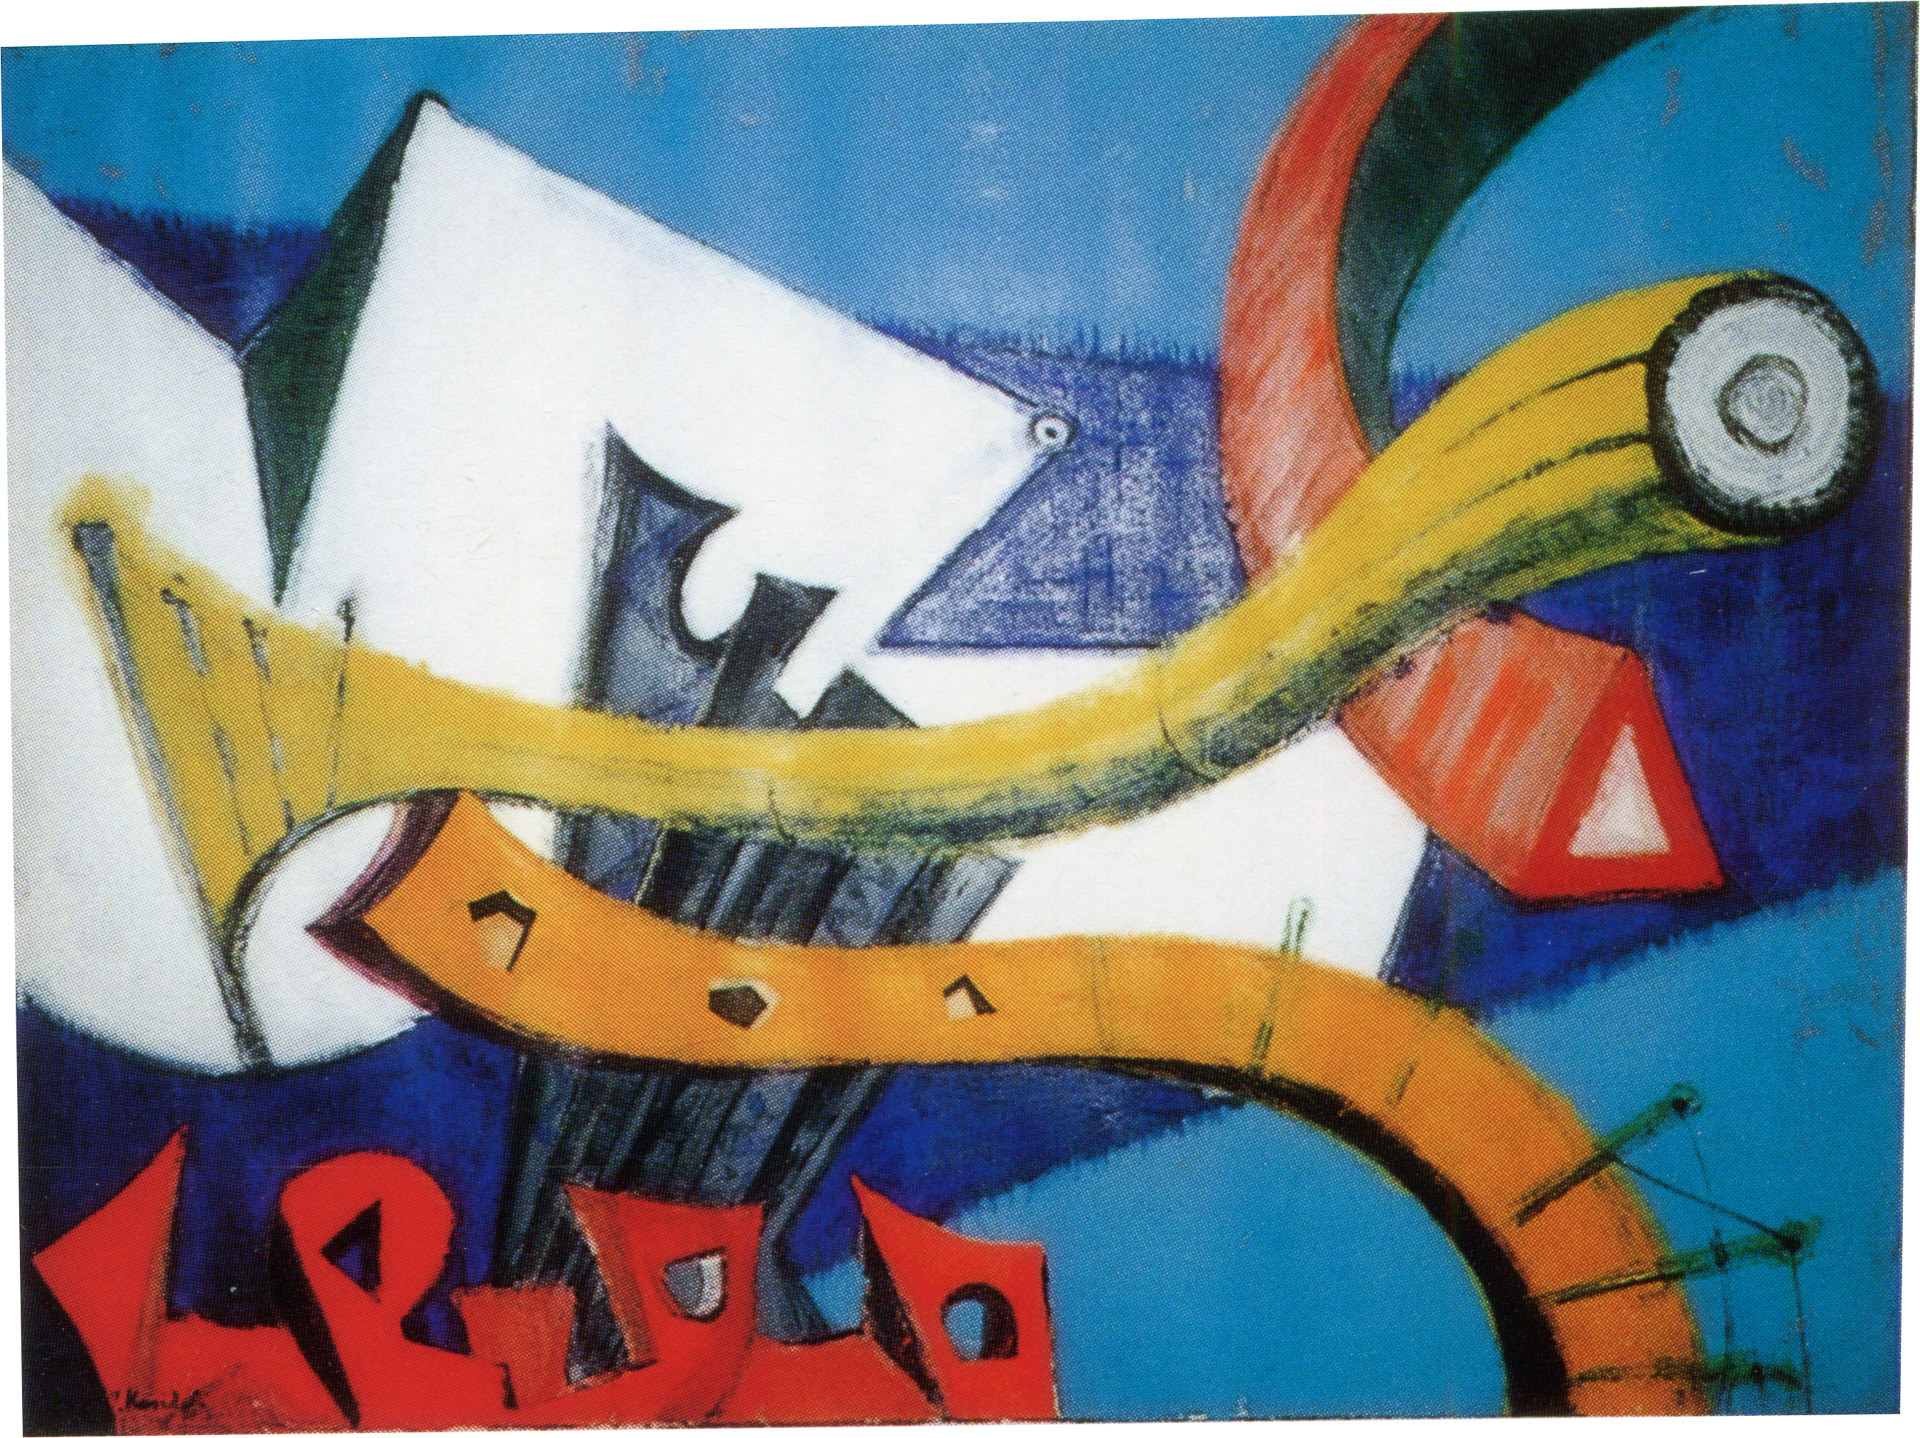 近藤竜男〈（作品タイトルなし）〉, 油彩・カンヴァス, 第1回サトウ画廊個展出品, 1956